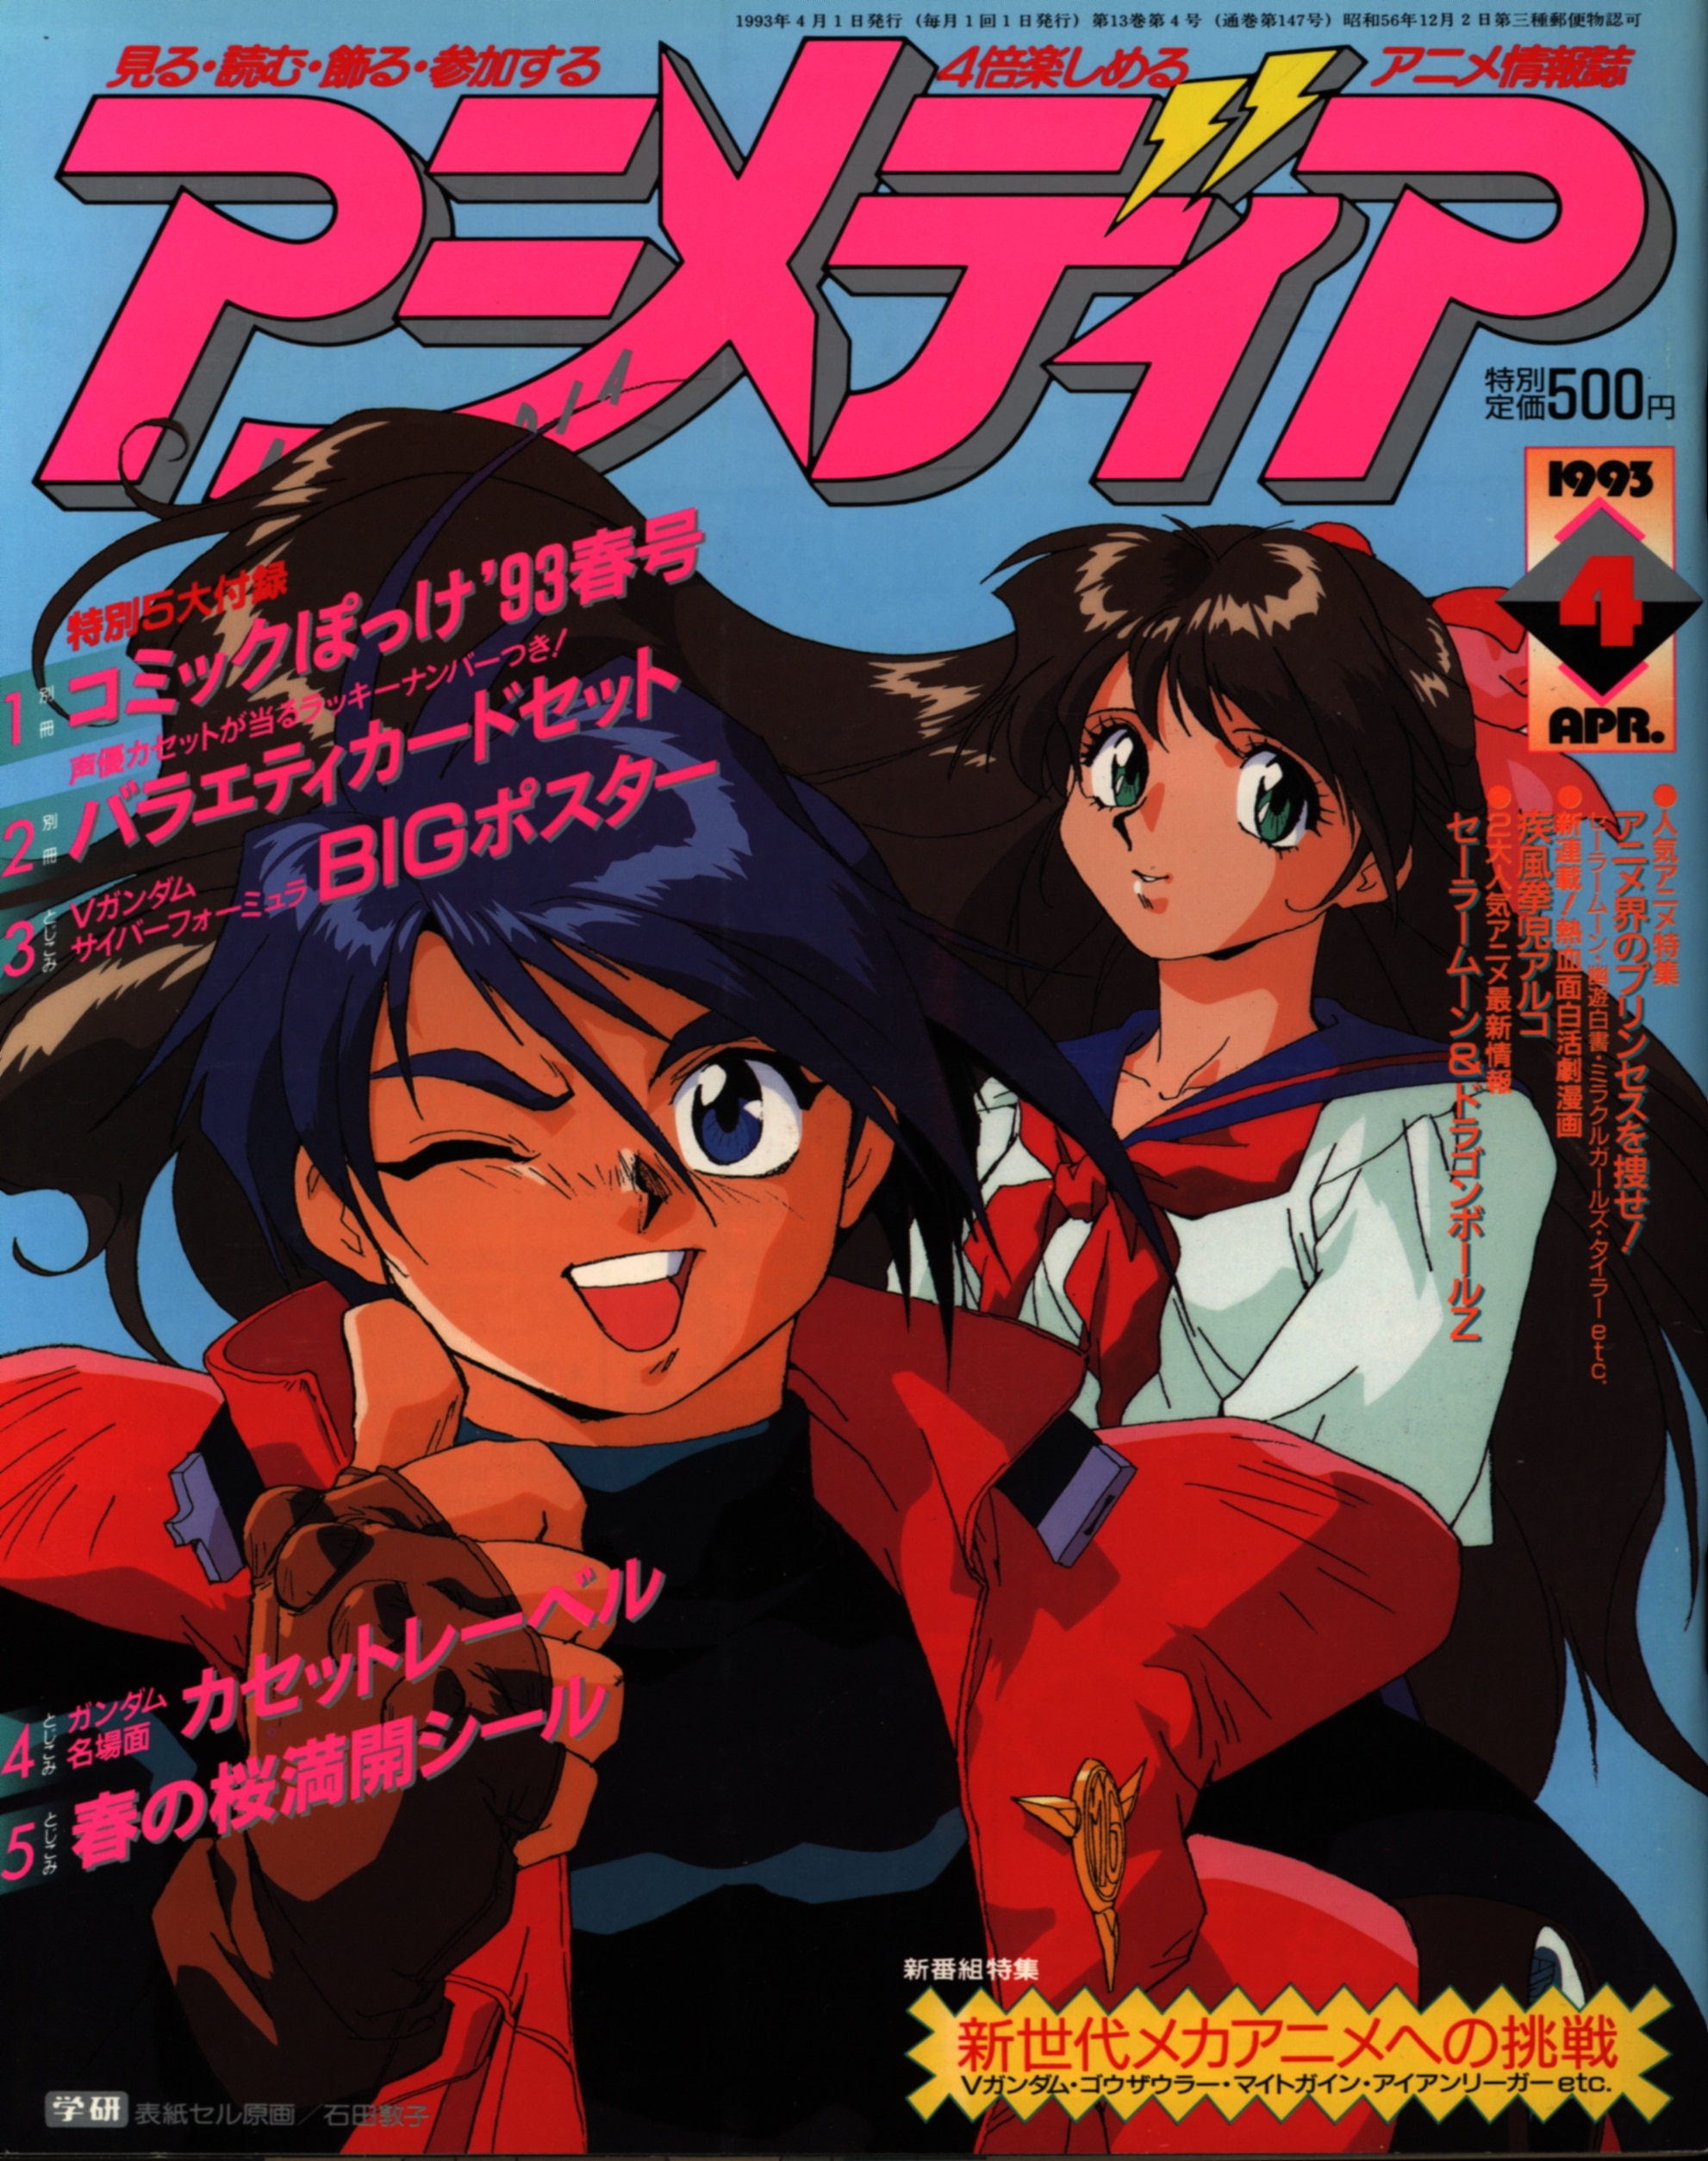 学習研究社 1993年 平成5年 のアニメ雑誌 本誌のみ アニメディア1993年 平成5年 4月号 9304 まんだらけ Mandarake